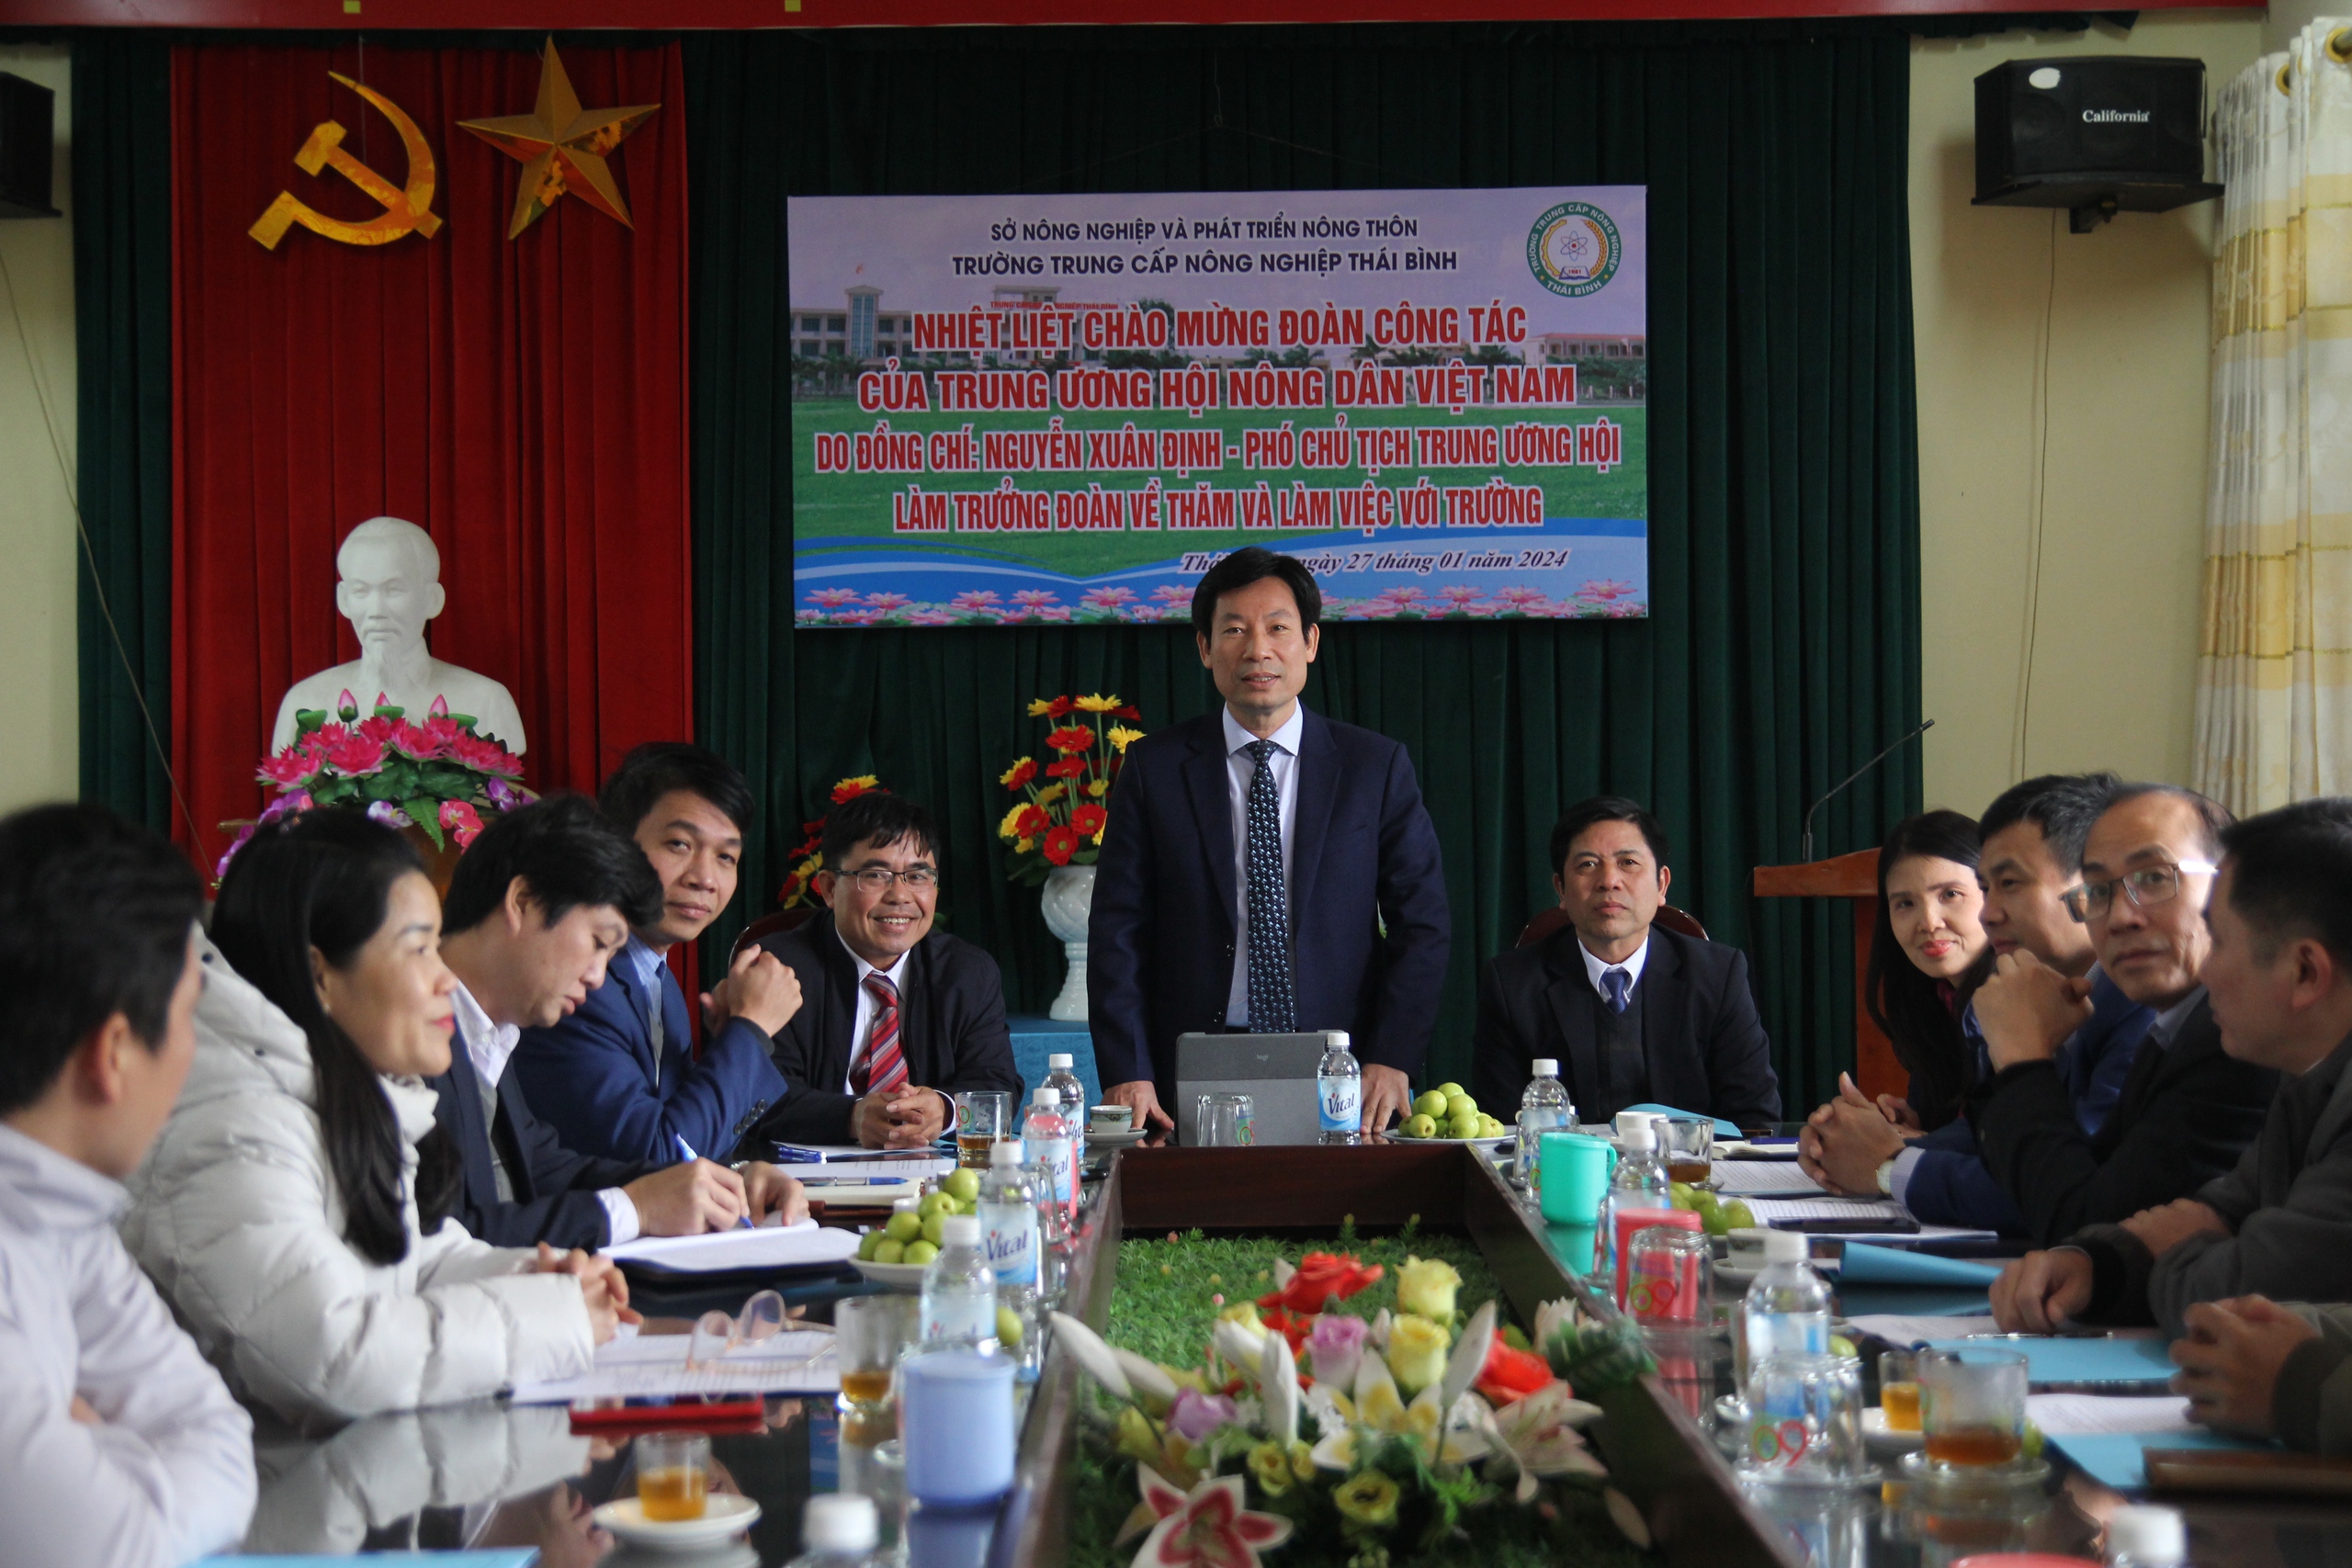 Phó Chủ tịch TƯ Hội NDVN Nguyễn Xuân Định thăm, làm việc với Trường trung cấp Nông nghiệp Thái Bình- Ảnh 2.